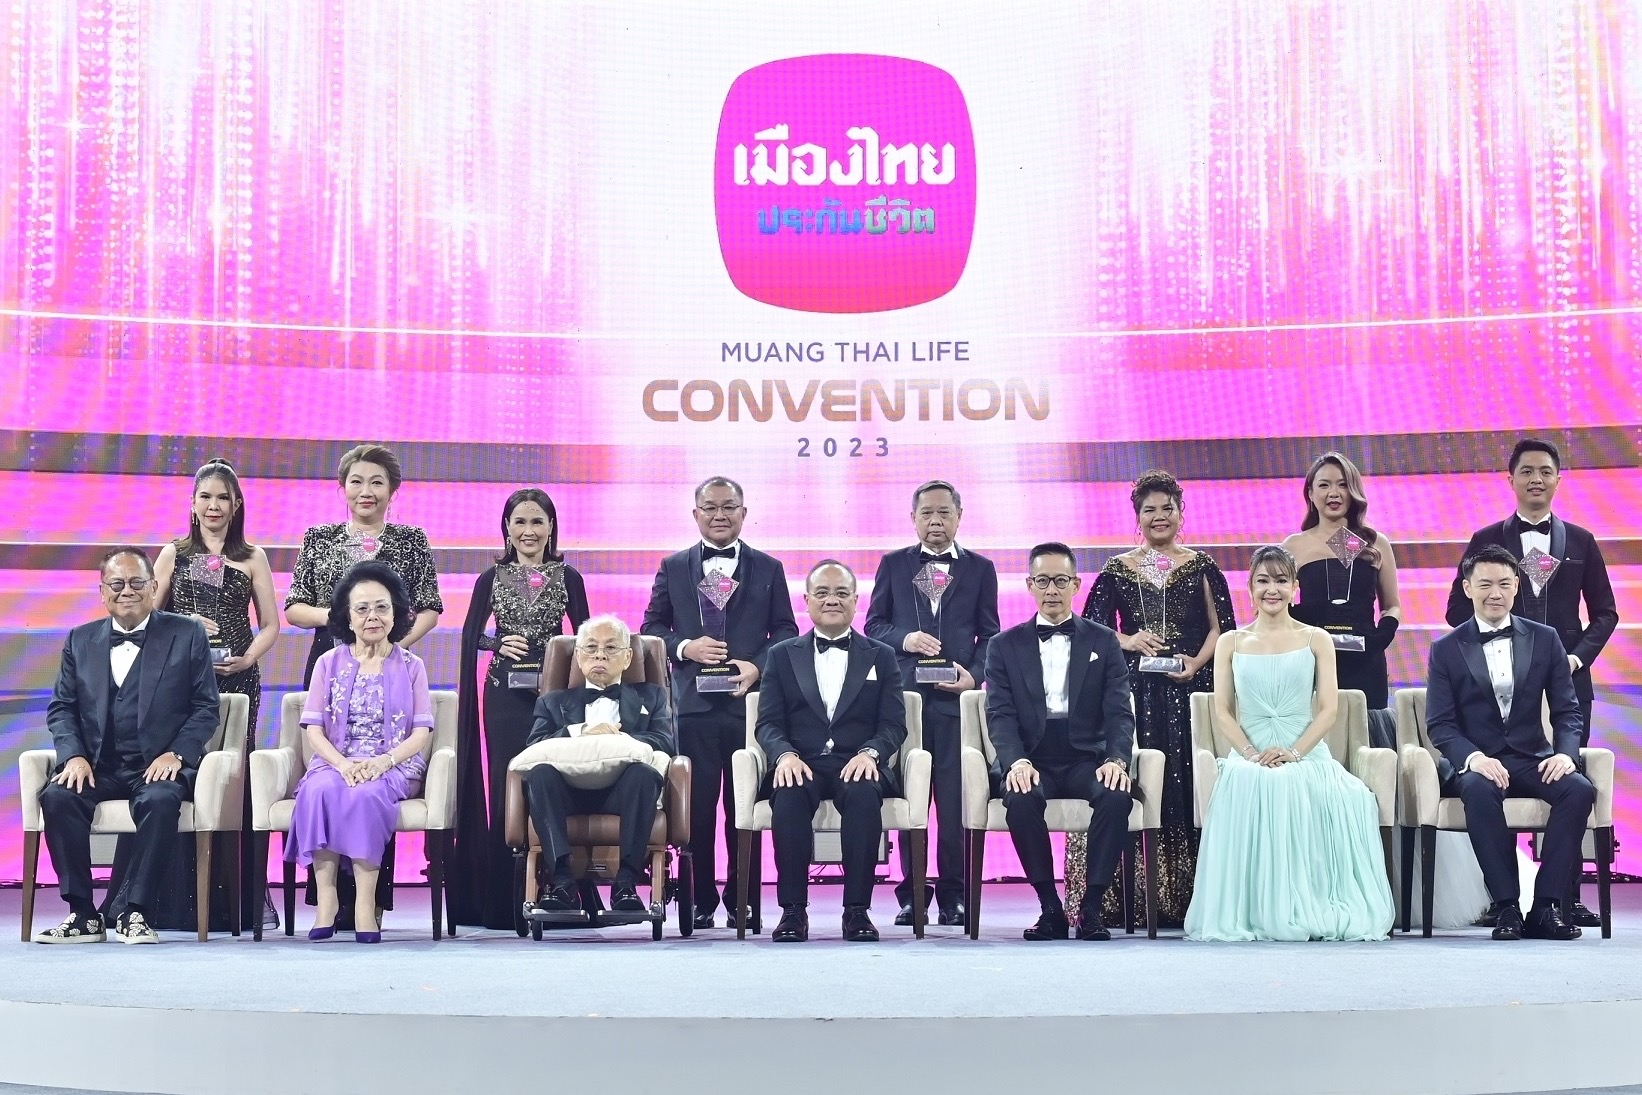 เมืองไทยประกันชีวิต จัดพิธีมอบรางวัลเกียรติยศ  “MUANG THAI LIFE CONVENTION 2023”อย่างยิ่งใหญ่